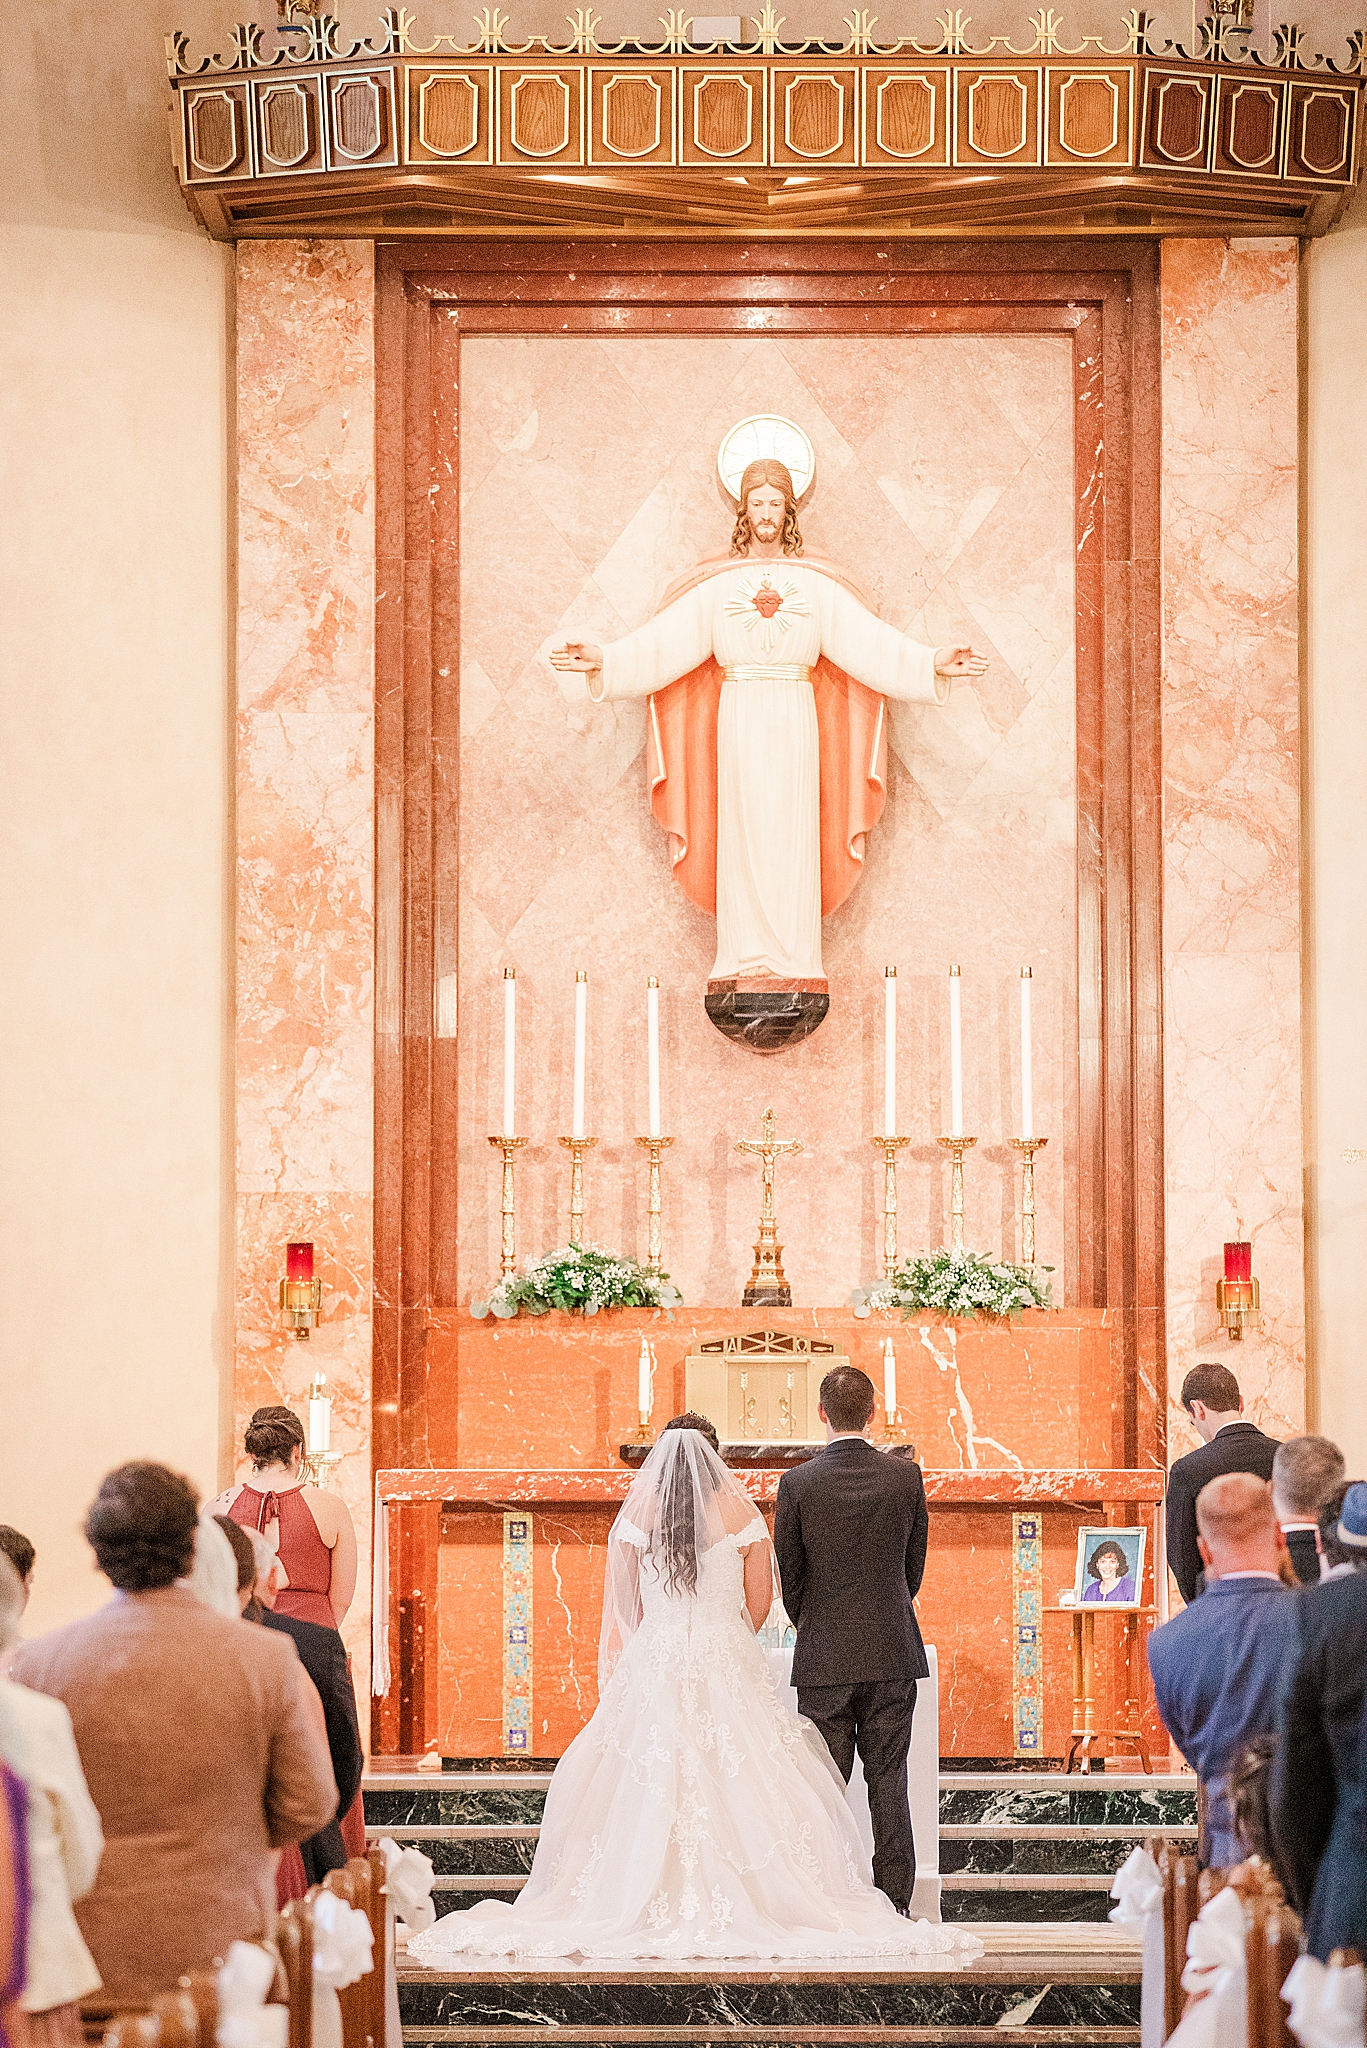 Sacred Heart Catholic Church of Florissant wedding ceremony